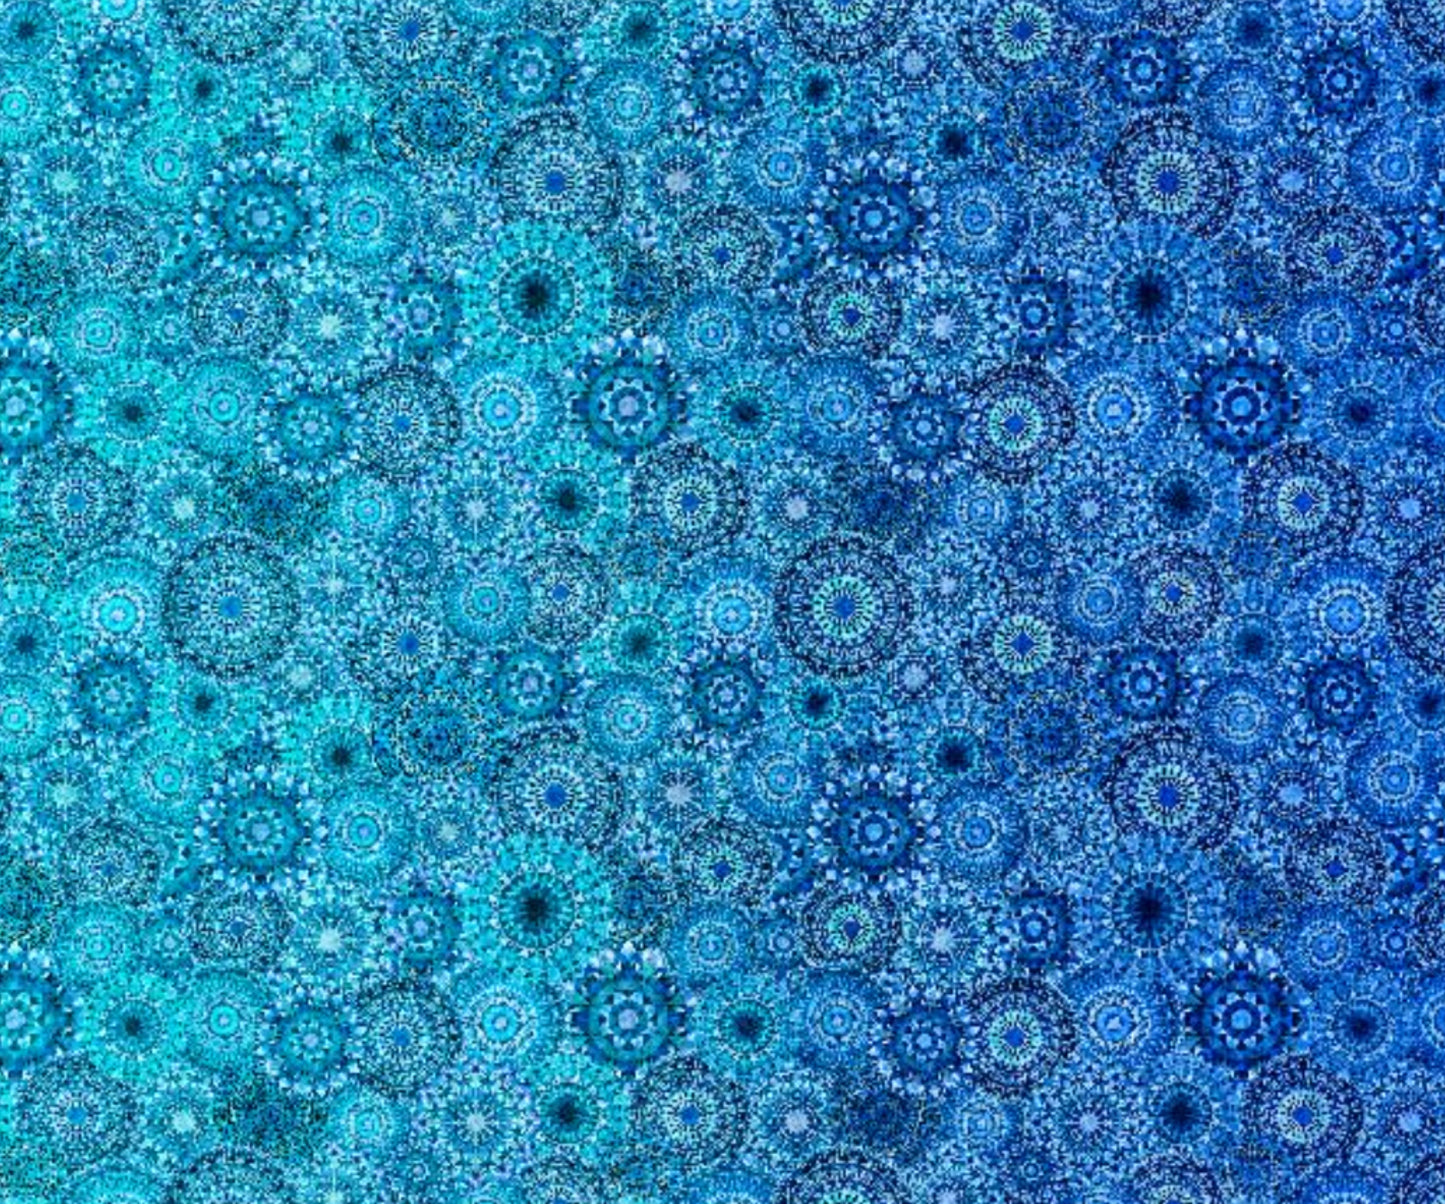 Jewelscape Fabric - Blue Ombre Geometric - Dan Morris for QT Fabrics